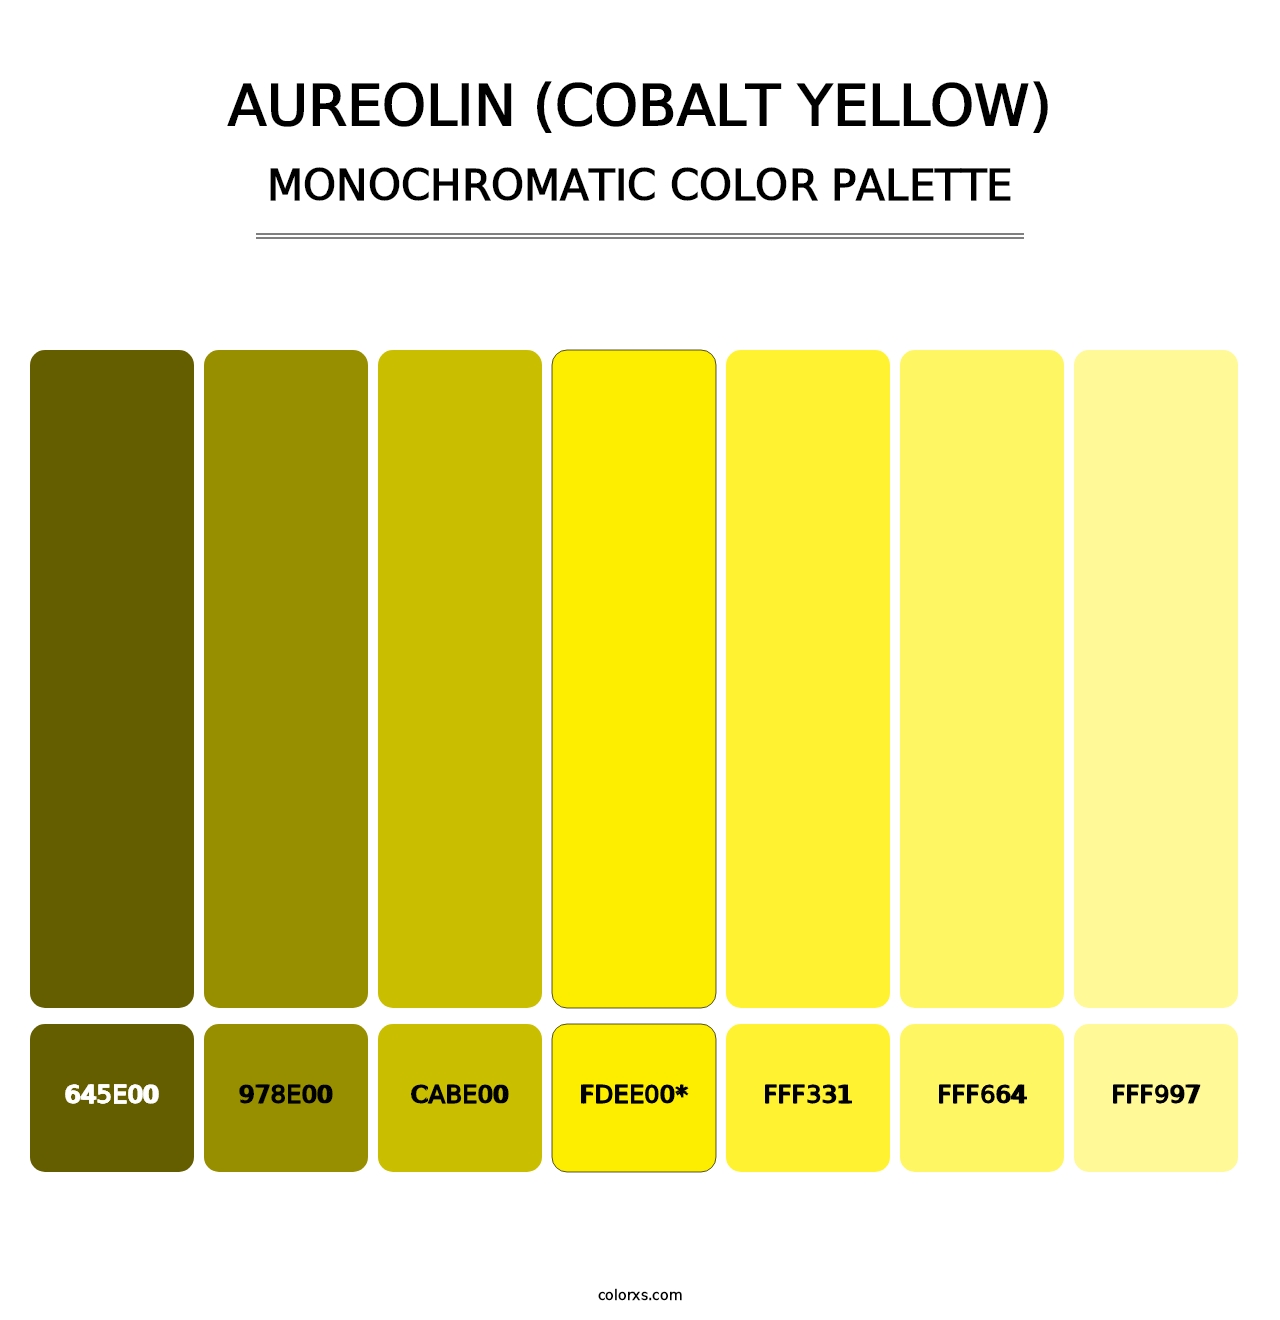 Aureolin (Cobalt Yellow) - Monochromatic Color Palette